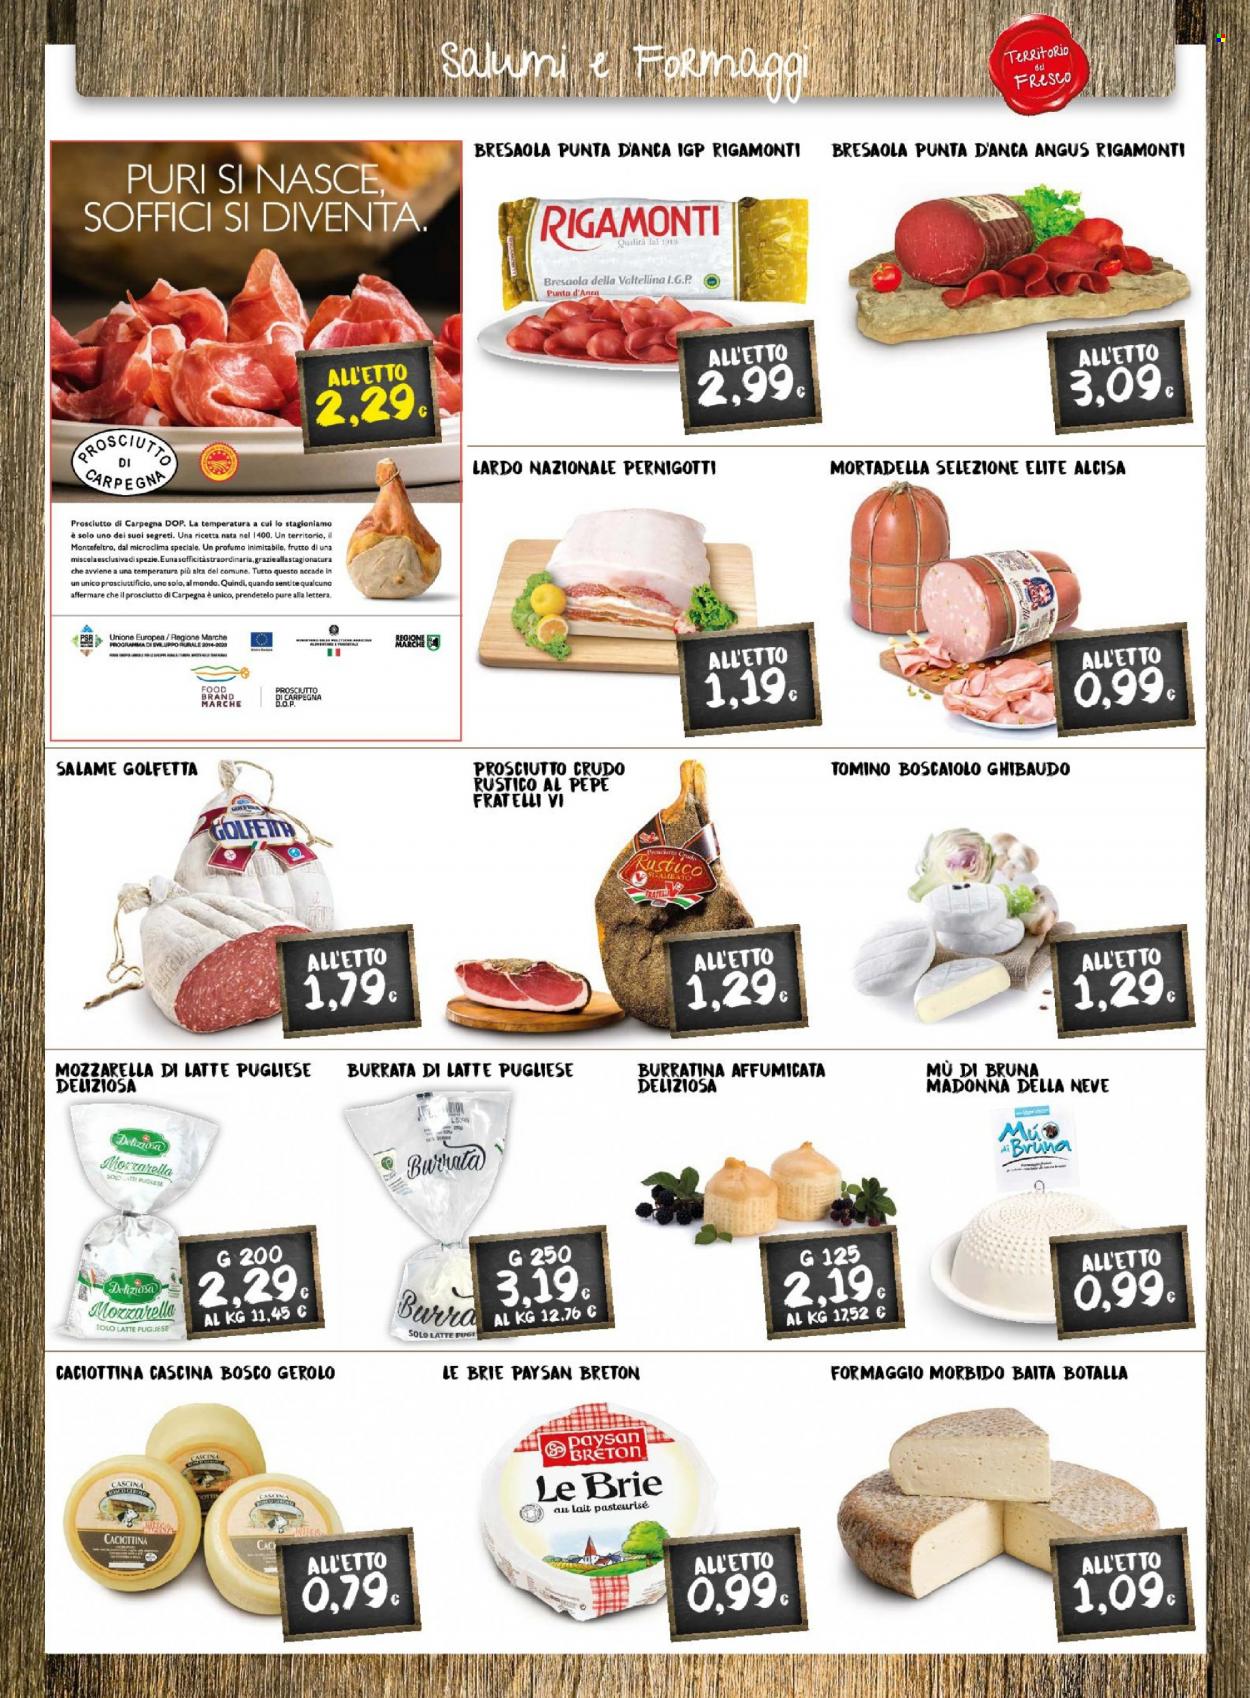 thumbnail - Volantino Doro Supermercati - 17/5/2022 - 29/5/2022 - Prodotti in offerta - prosciutto, bresaola, salame, prosciutto crudo, lardo, mortadella, formaggio, mozzarella, brie, burrata, tomino, profumo. Pagina 3.